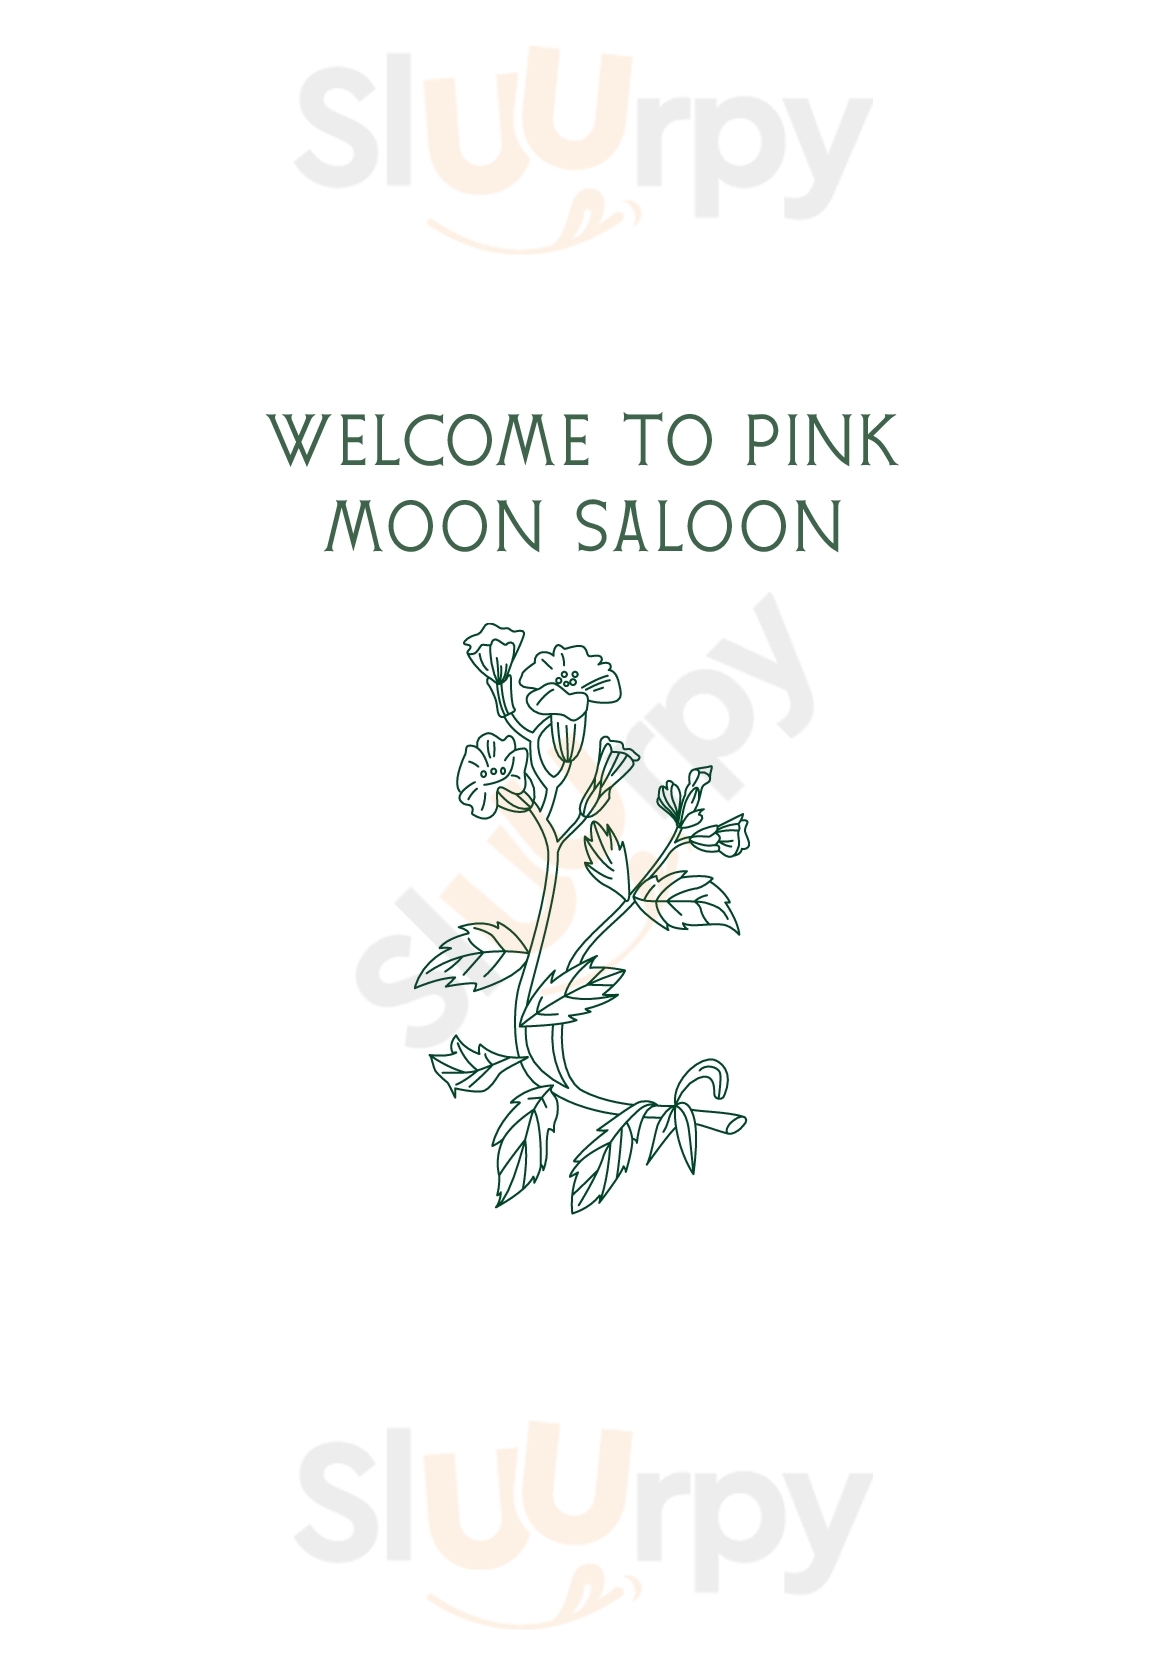 Pink Moon Saloon Adelaide Menu - 1